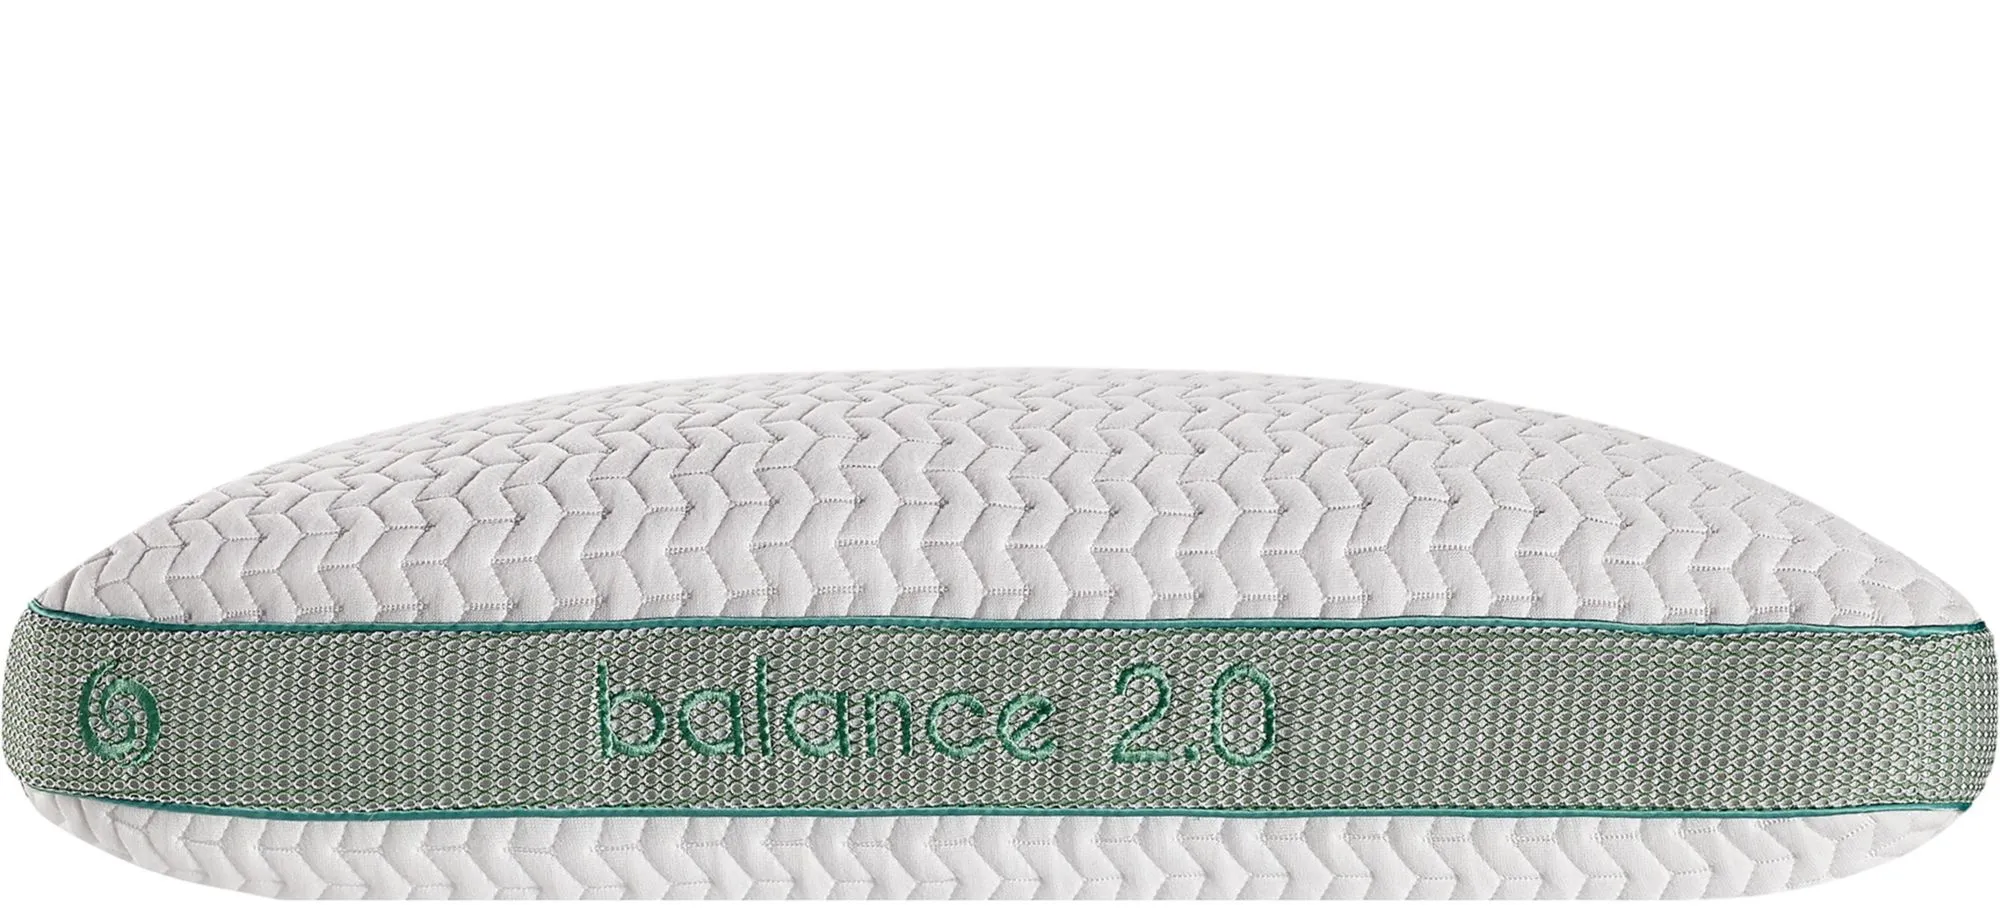 BEDGEAR Balance Pillow by Bedgear